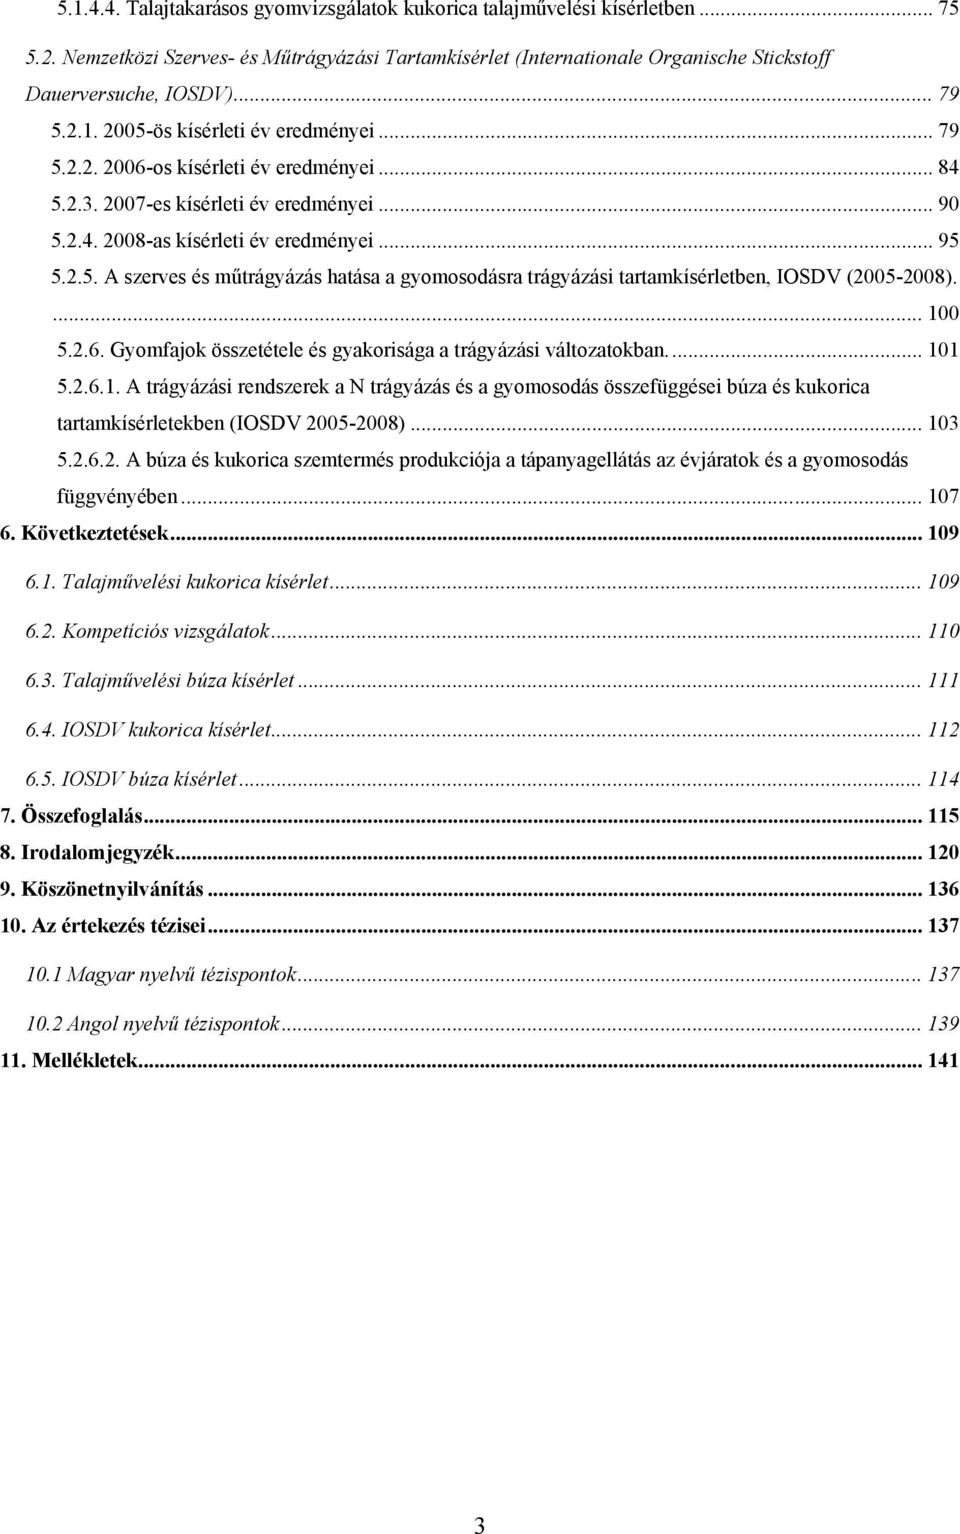 ... 100 5.2.6. Gyomfajok összetétele és gyakorisága a trágyázási változatokban... 101 5.2.6.1. A trágyázási rendszerek a N trágyázás és a gyomosodás összefüggései búza és kukorica tartamkísérletekben (IOSDV 2005-2008).